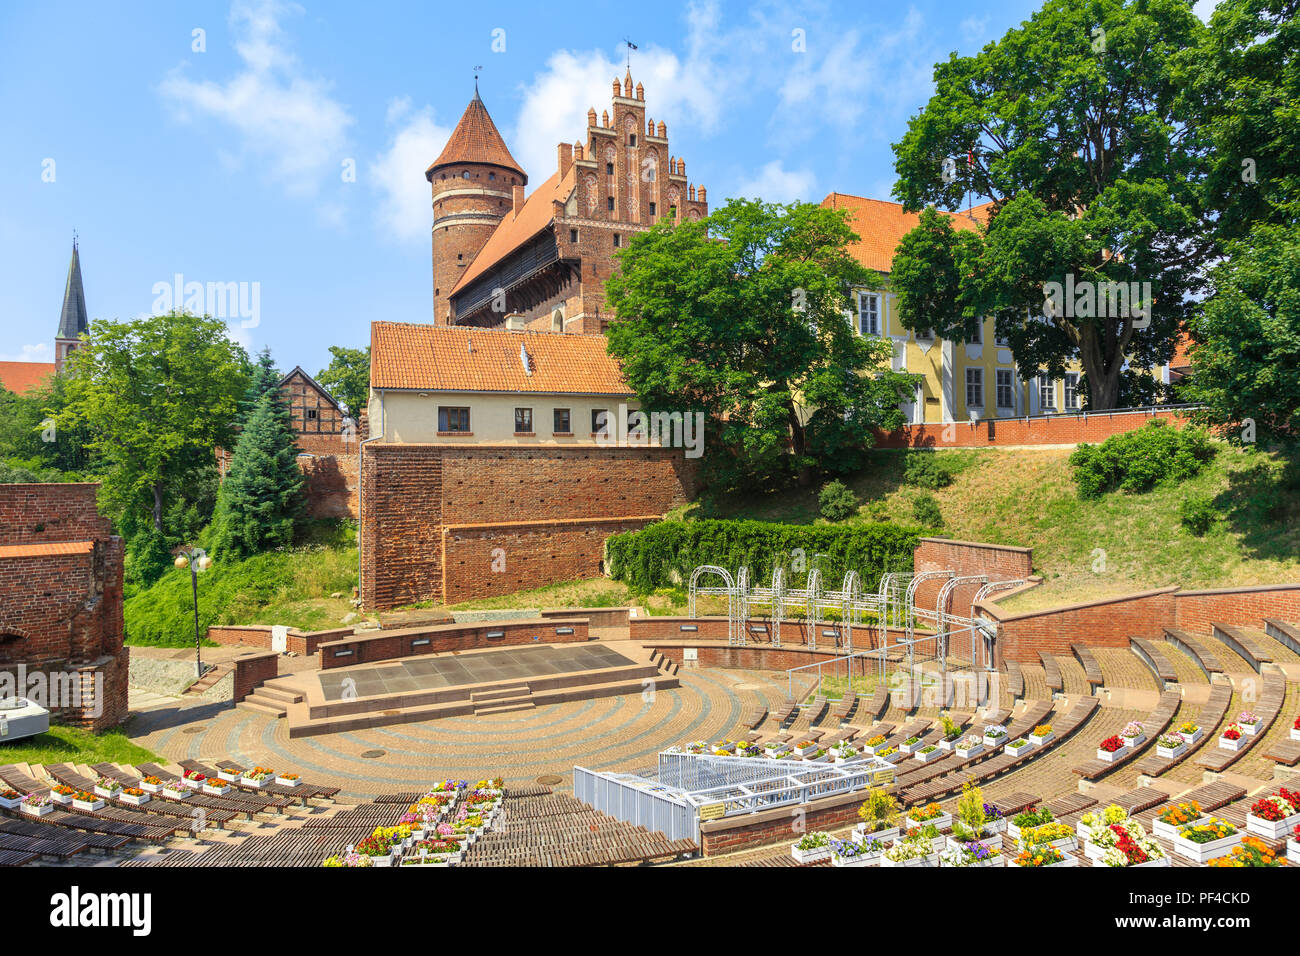 Amphitheater und das Schloss von Ermland Bischöfe in Olsztyn, Polen, im vierzehnten Jahrhundert erbaut im gotischen Baustil Stockfoto